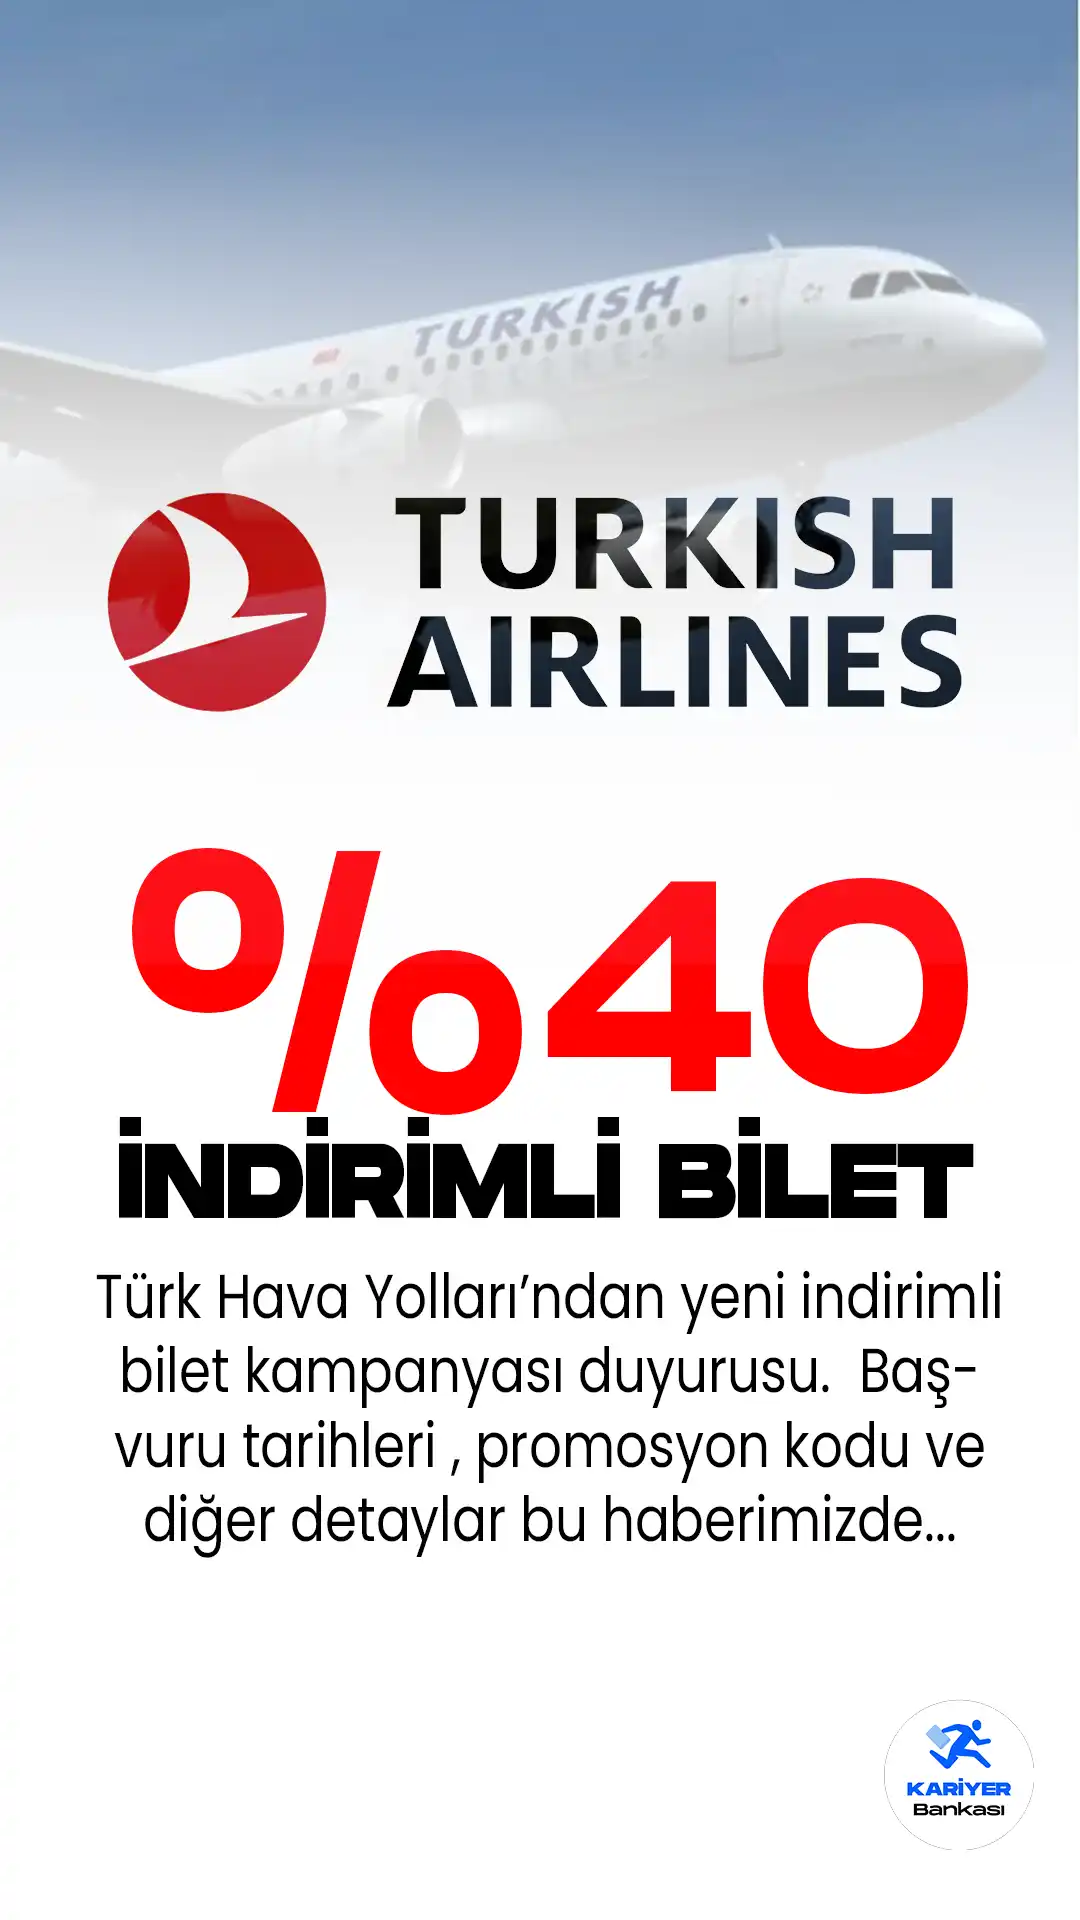 Türk Hava Yolları (THY), İstanbul ve Ankara seyahatleri için %40 indirim sunan bir kampanya başlattı. Kampanya şartları ve tarihleri...